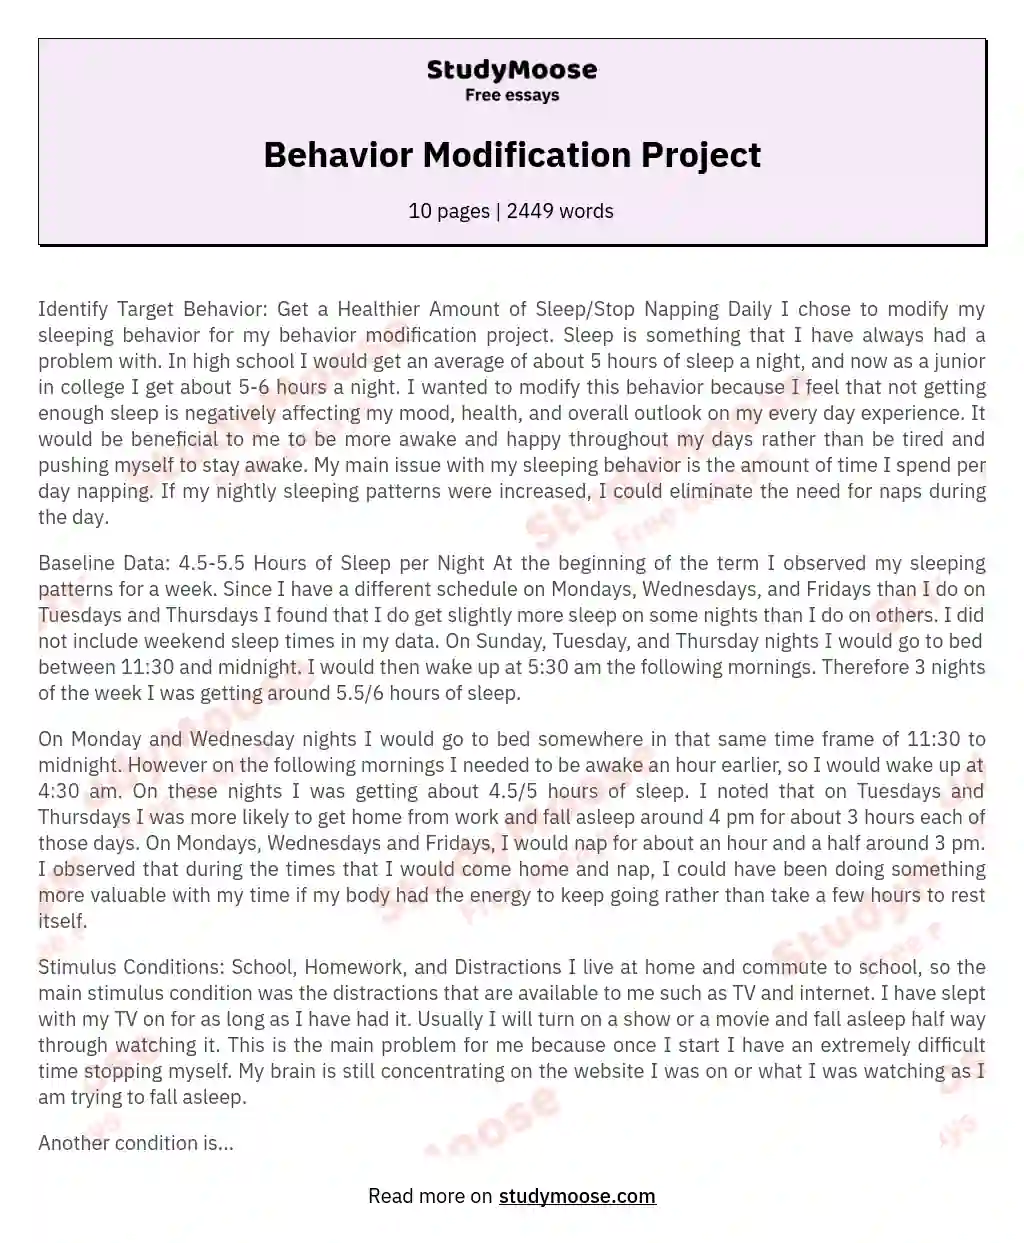 Behavior Modification Project essay